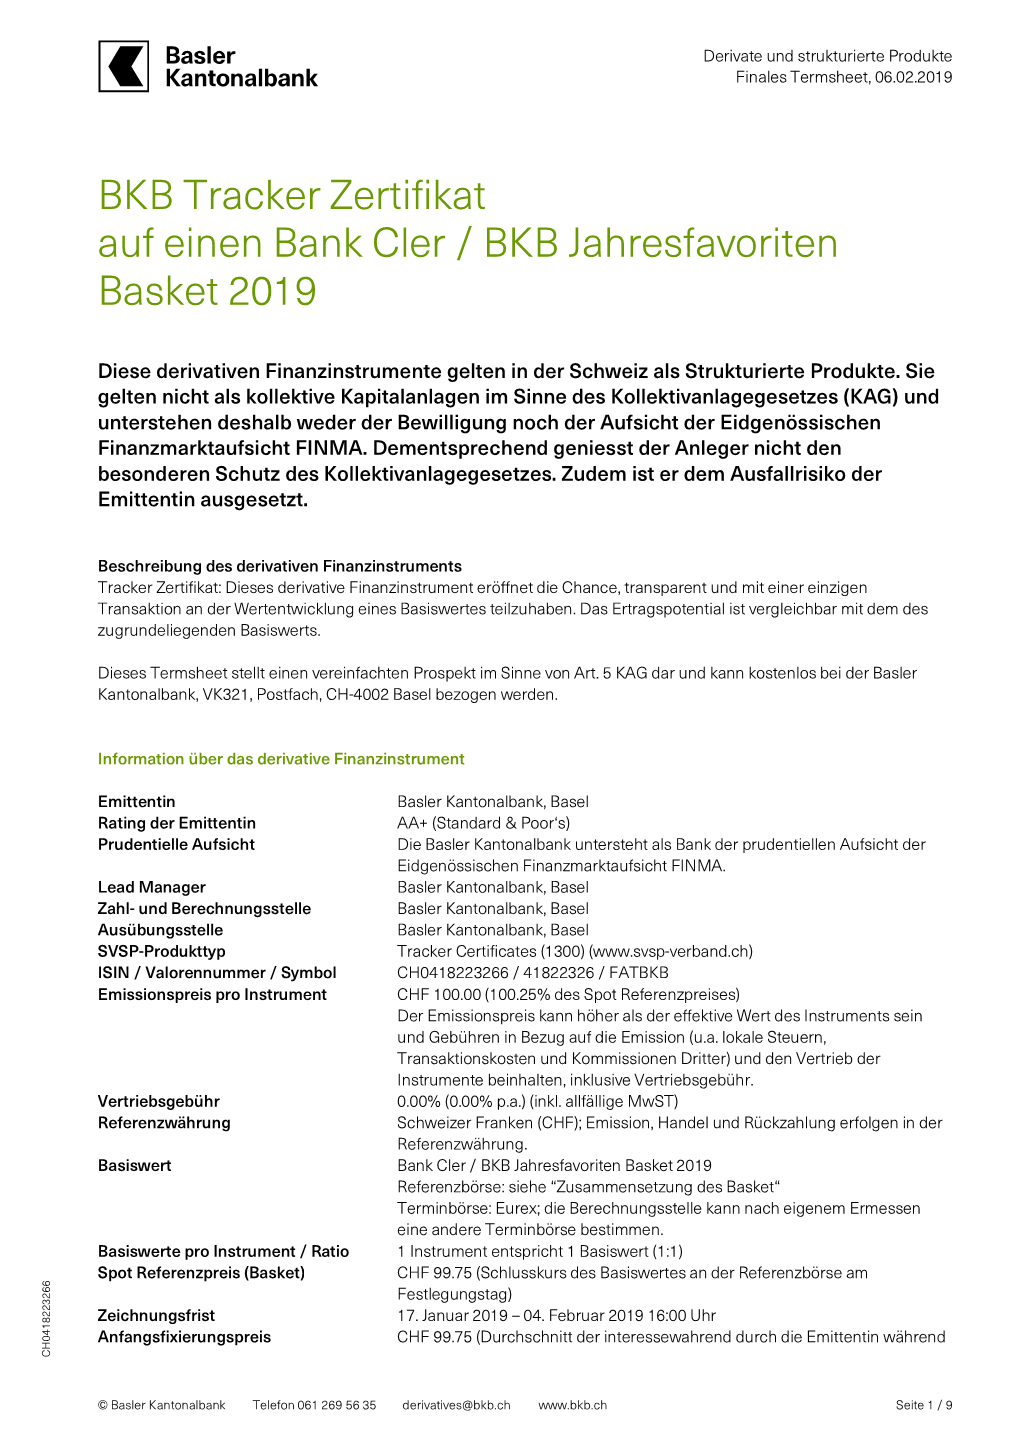 BKB Tracker Zertifikat Auf Einen Bank Cler / BKB Jahresfavoriten Basket